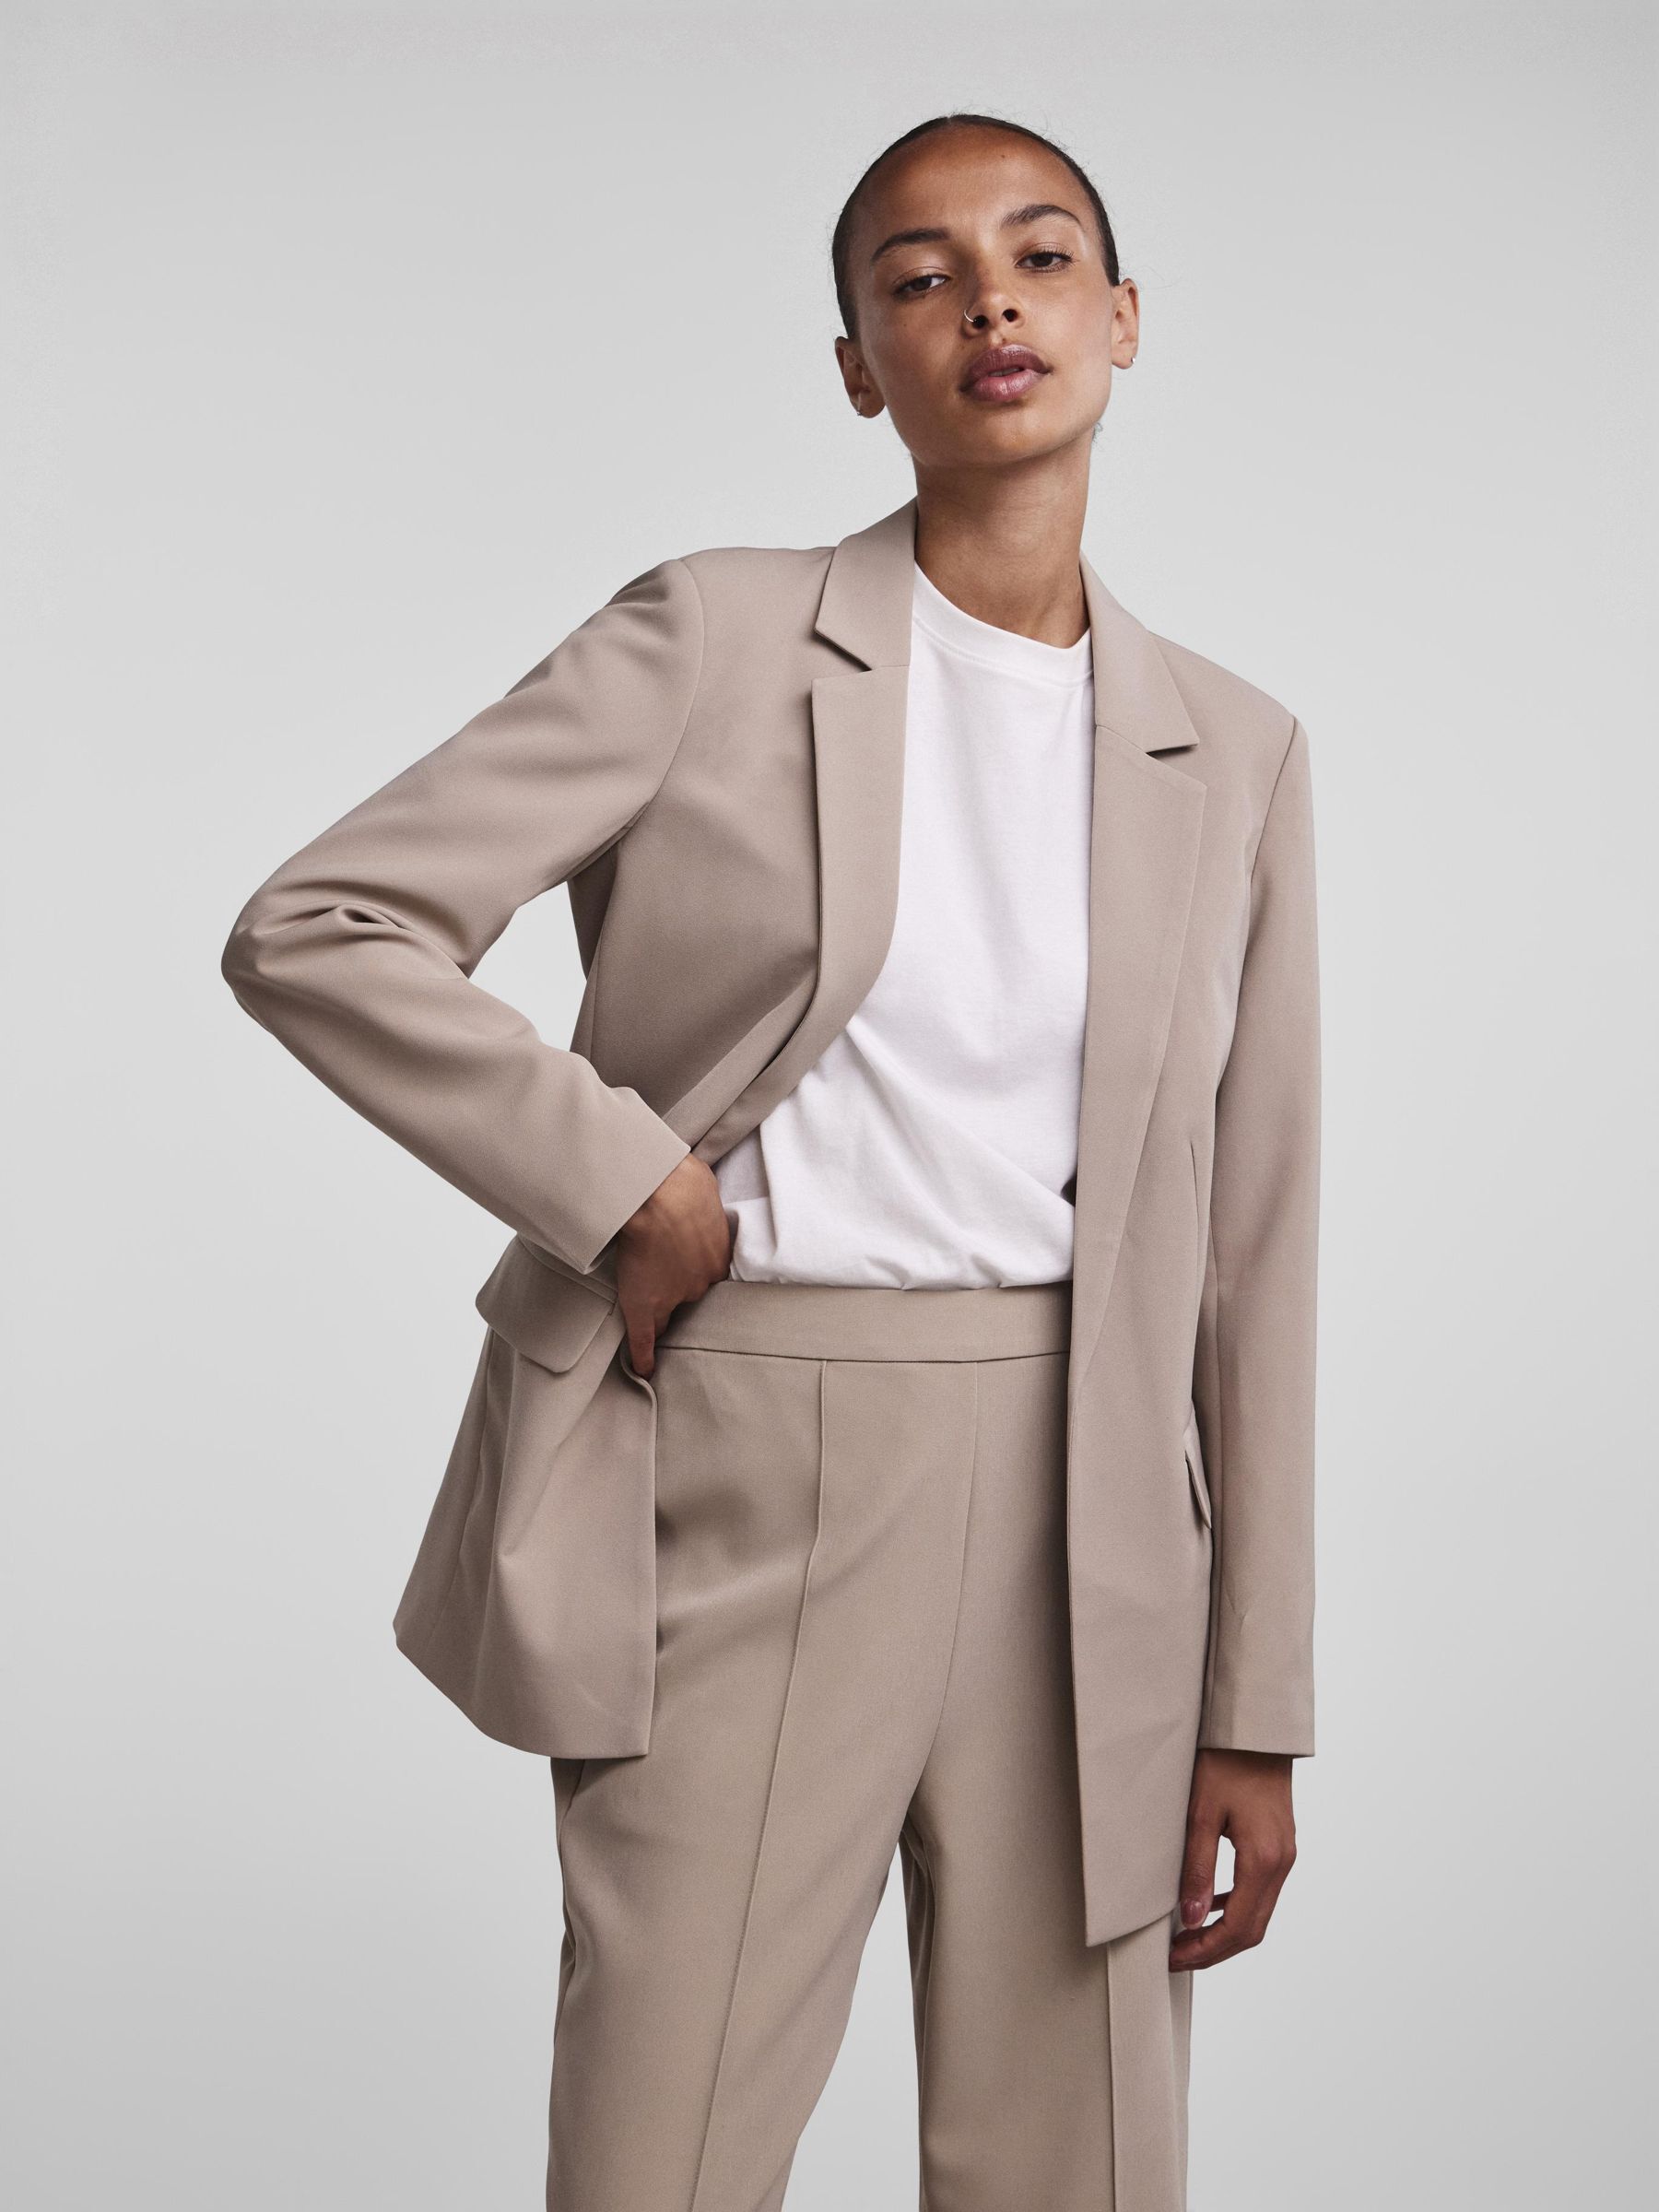 Praline Tan Poplin Jacket | Men's Suits | Haspel